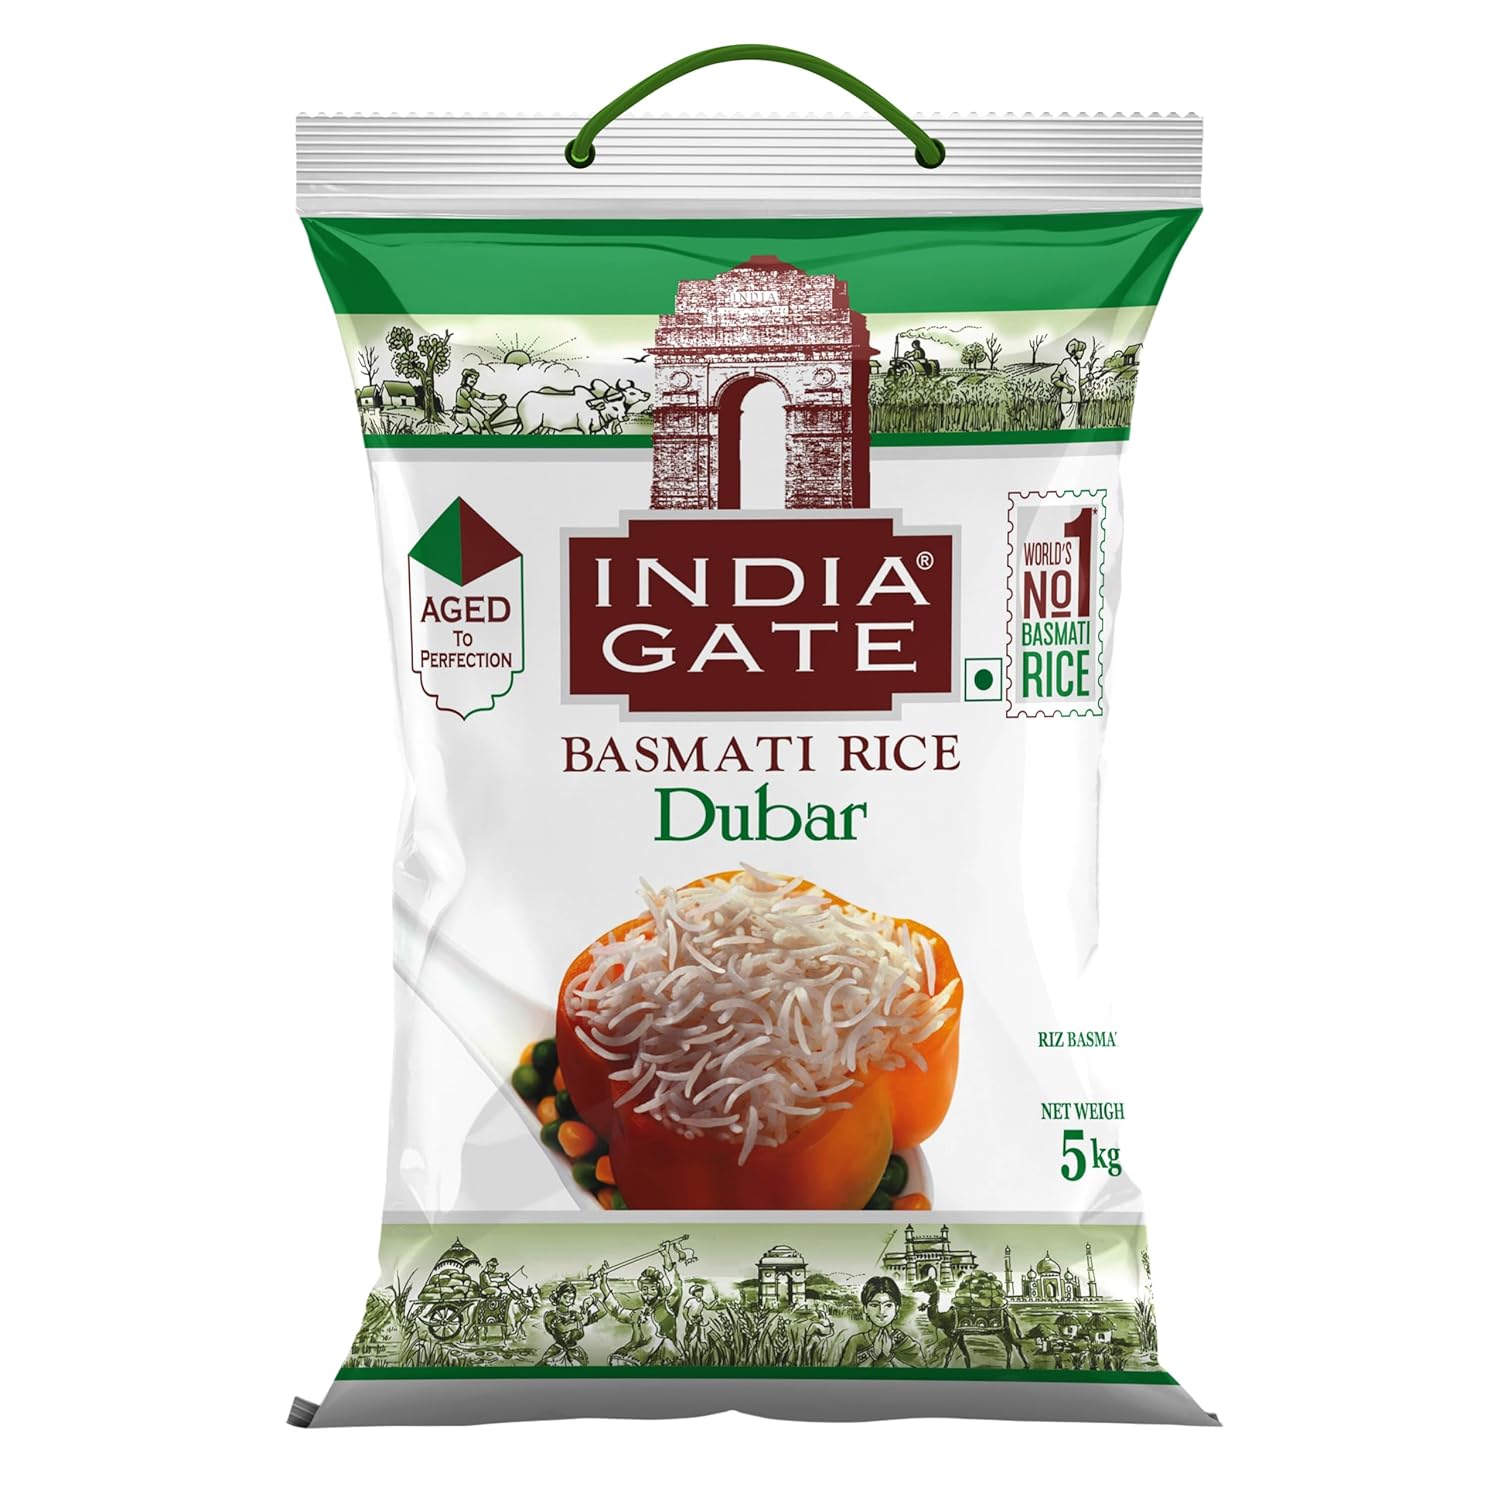 India Gate Basmati Rice Dubar 5 kg